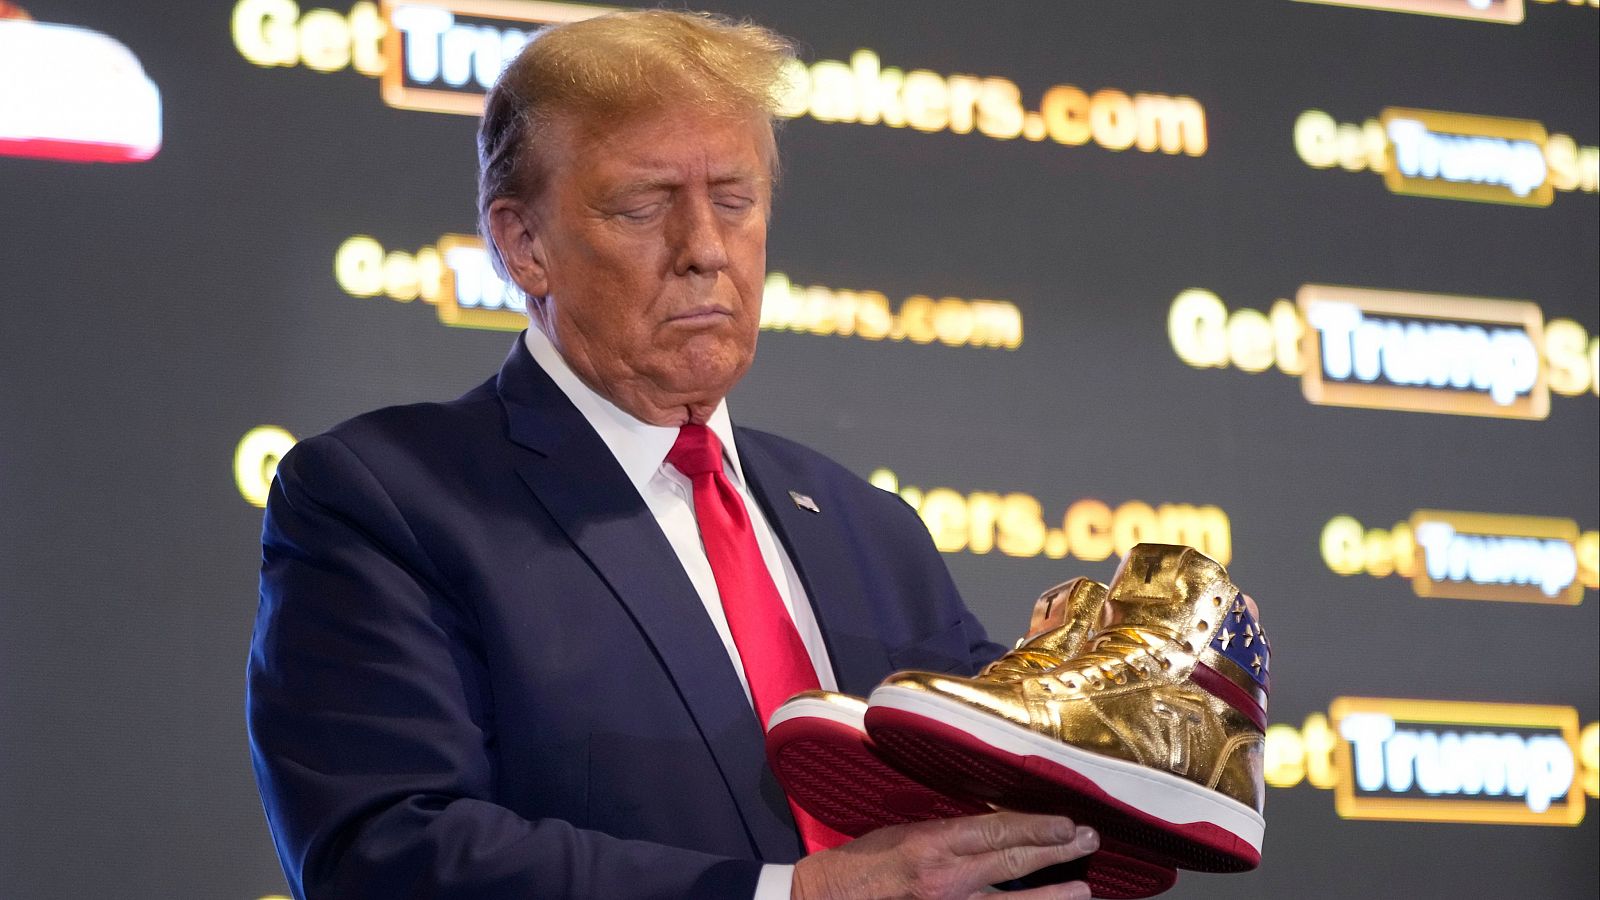 Trump lanza sus propias zapatillas 'Never Surrender' (Nunca te rindas)